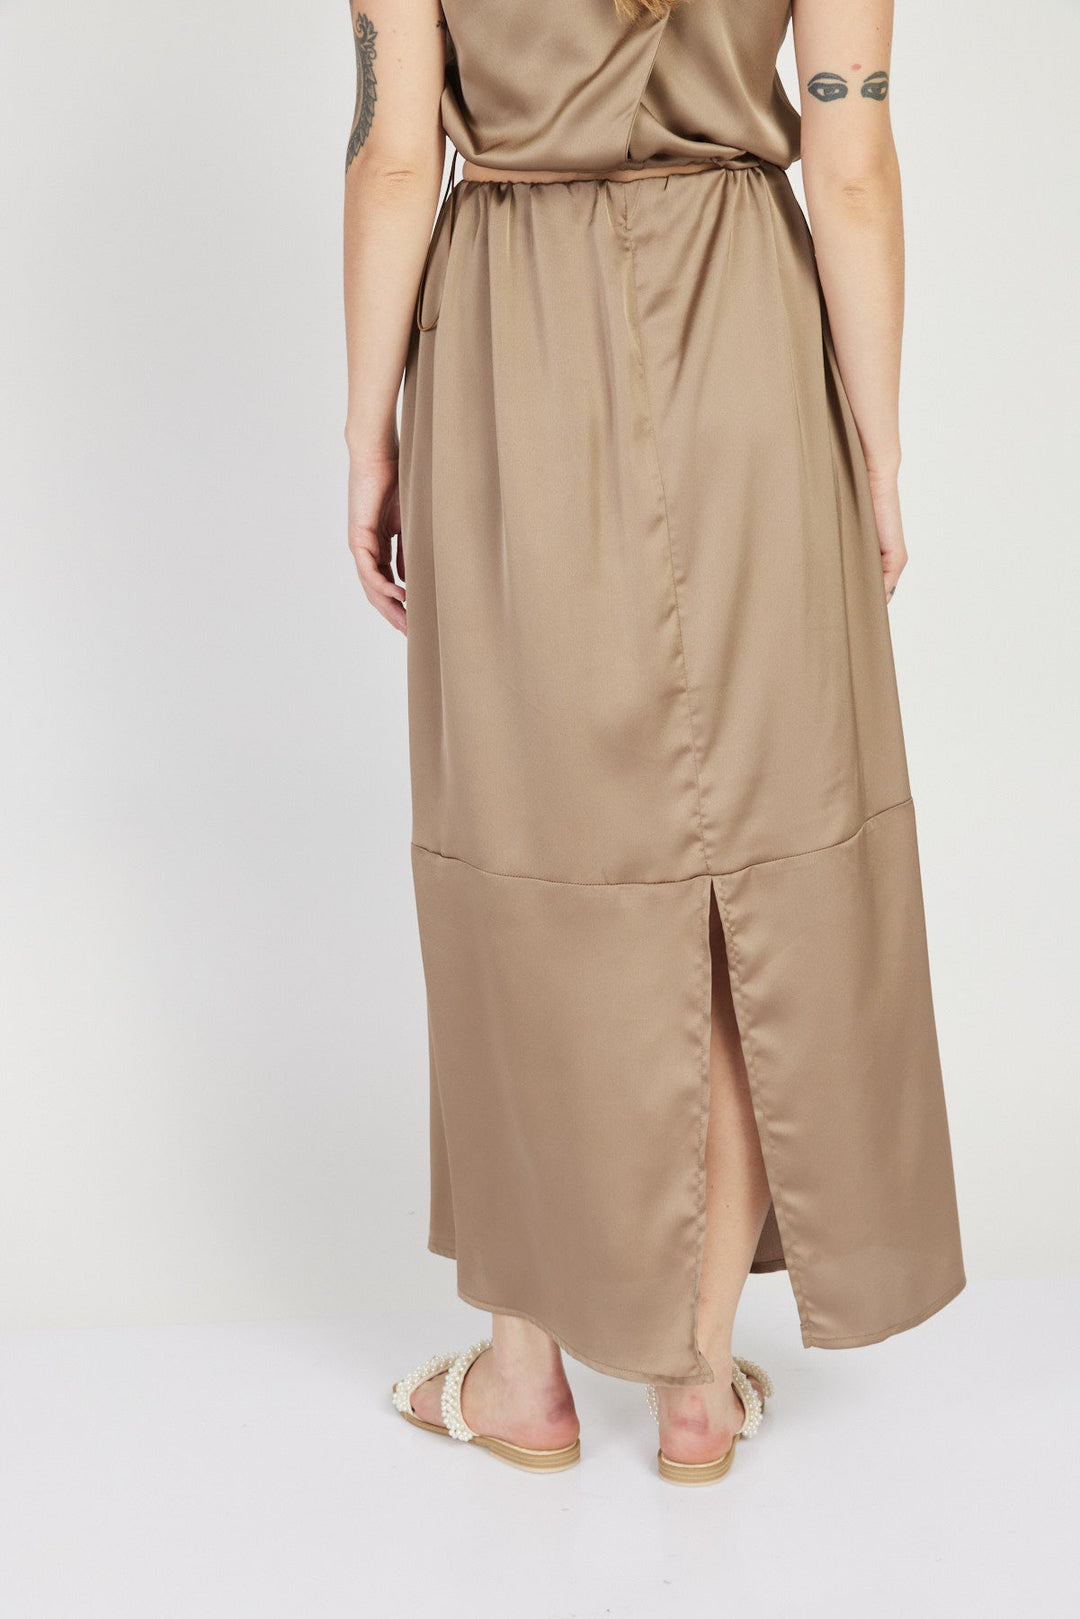 חצאית מקסי סנדרו בצבע בז' - Julliet